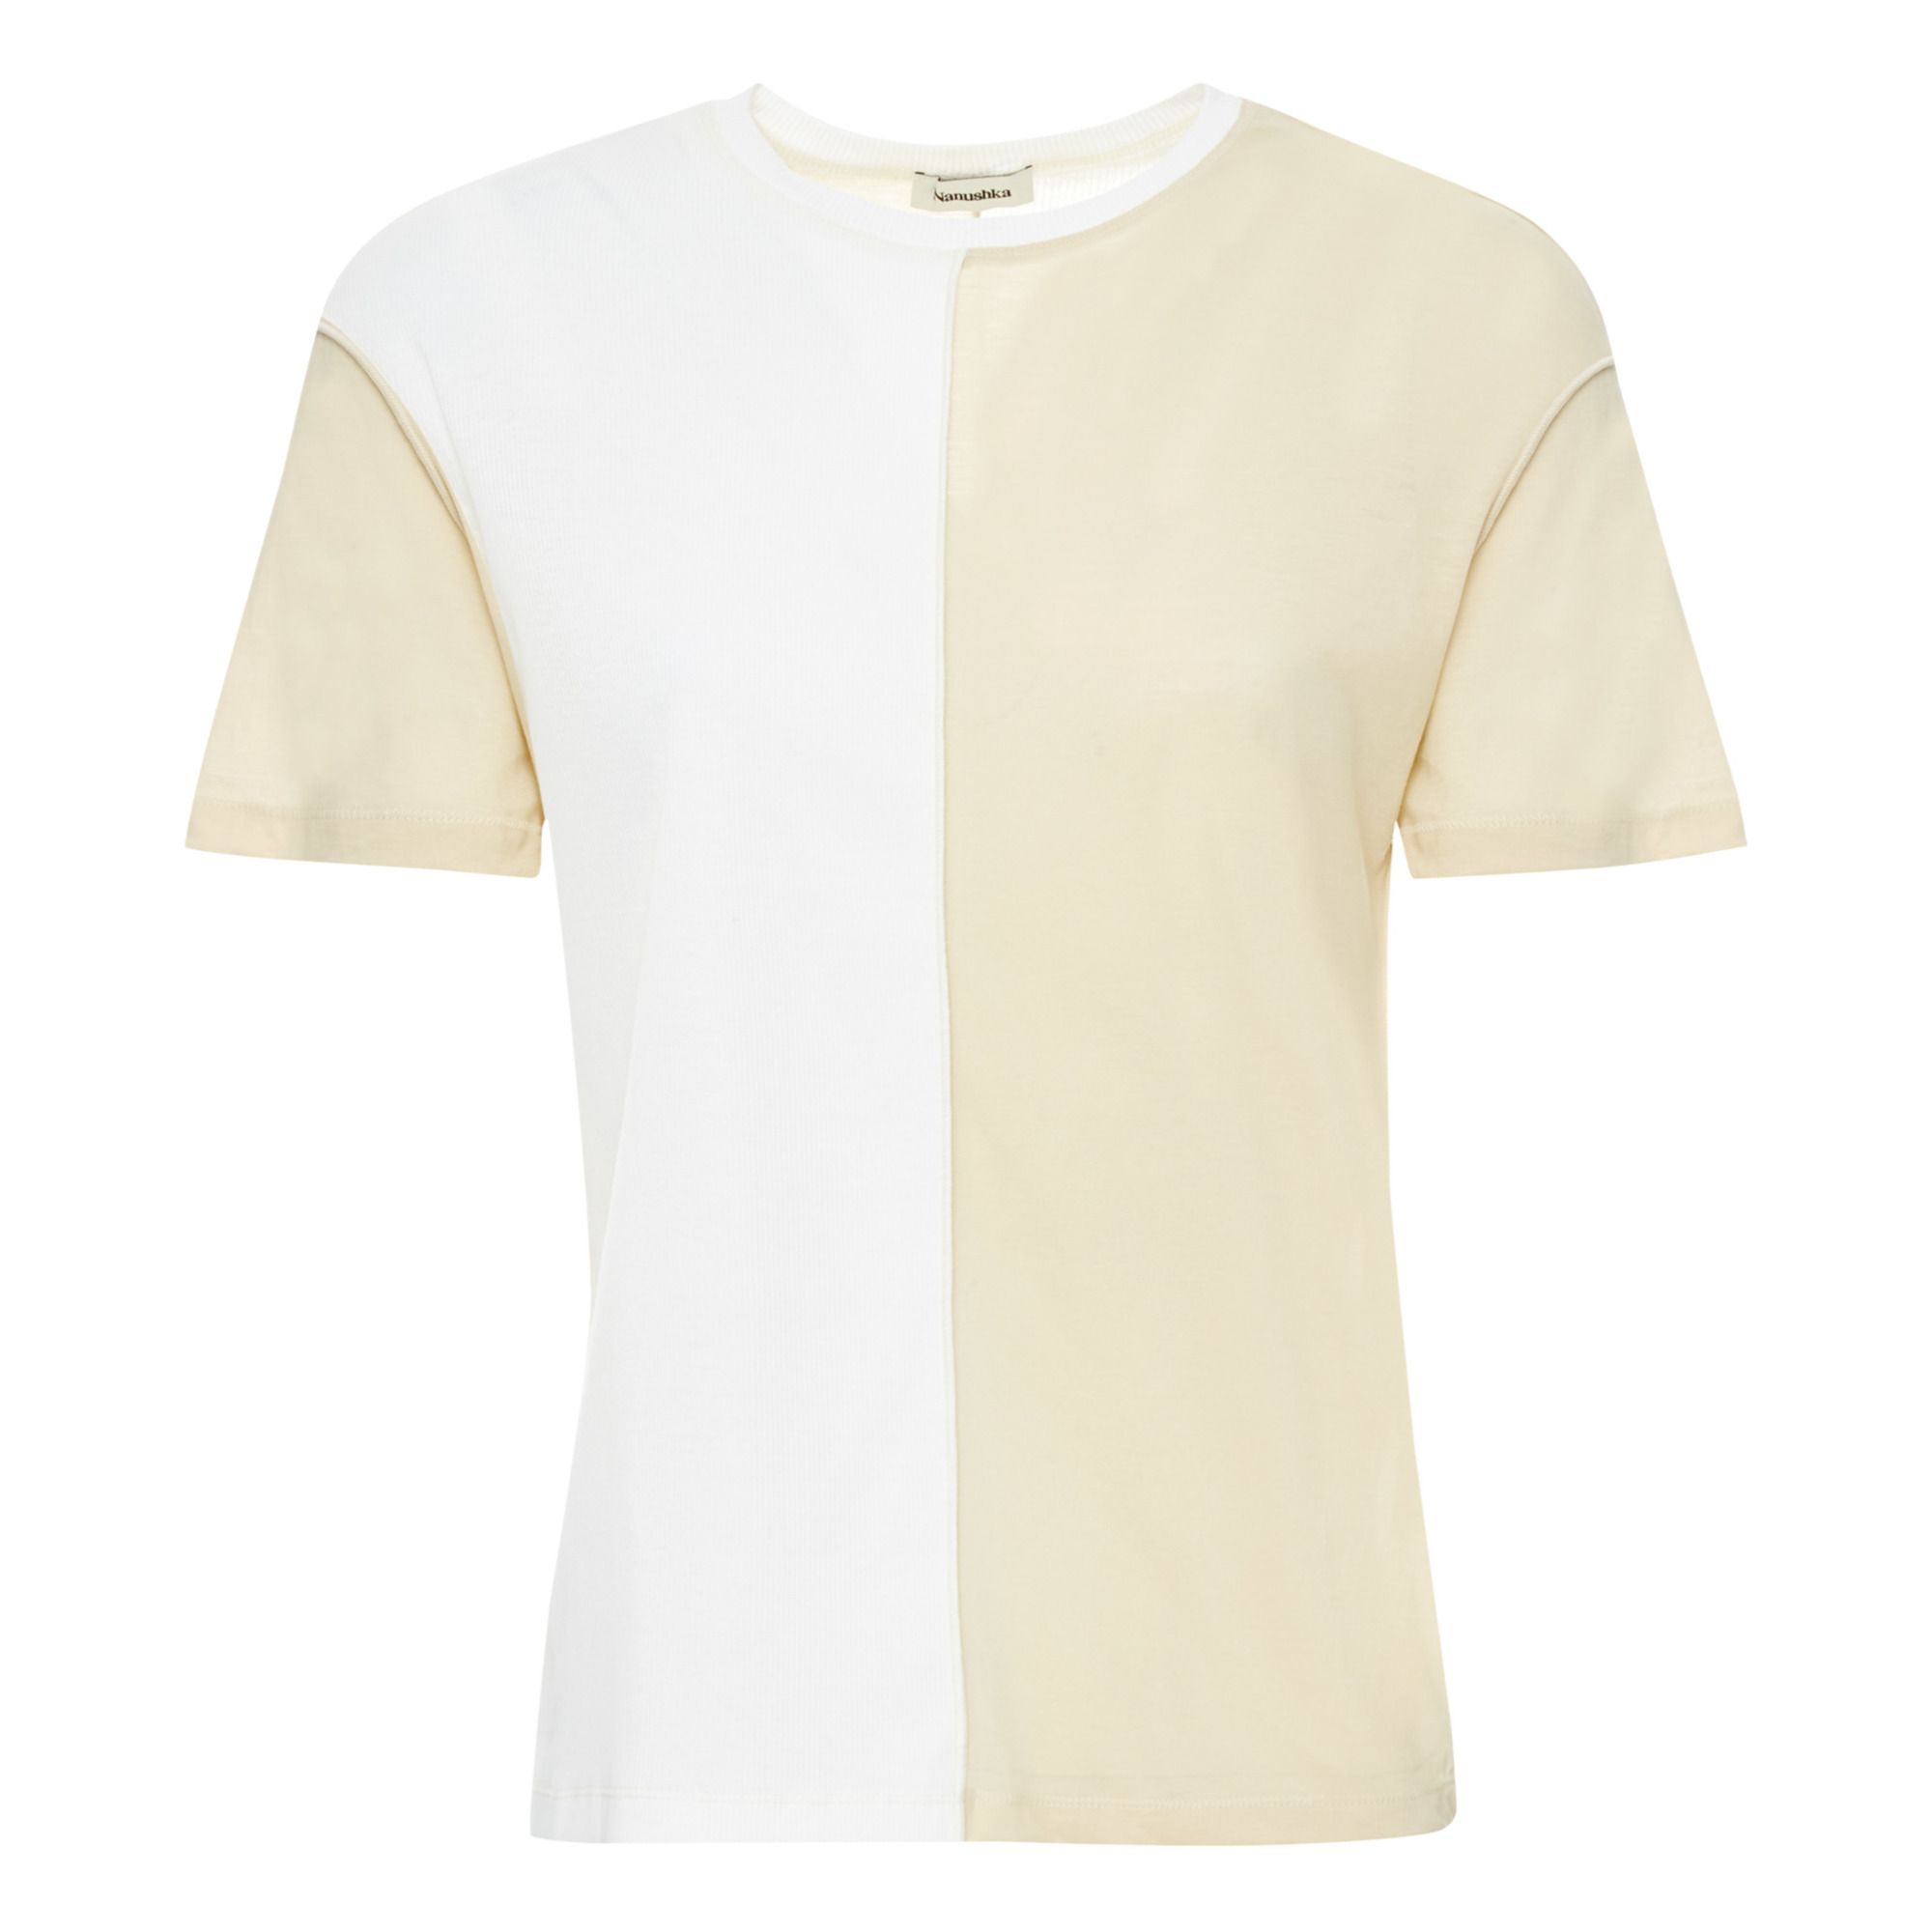 Nanushka - T-shirt Hove - Femme - Crème